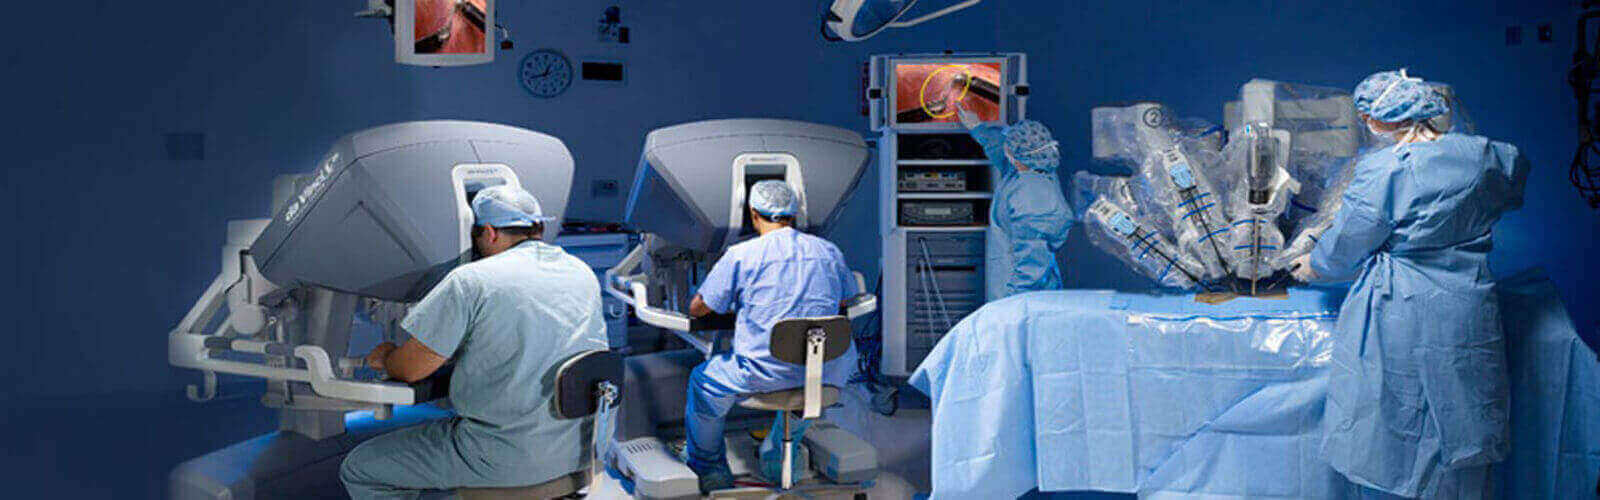 Robotic Surgery in Uae